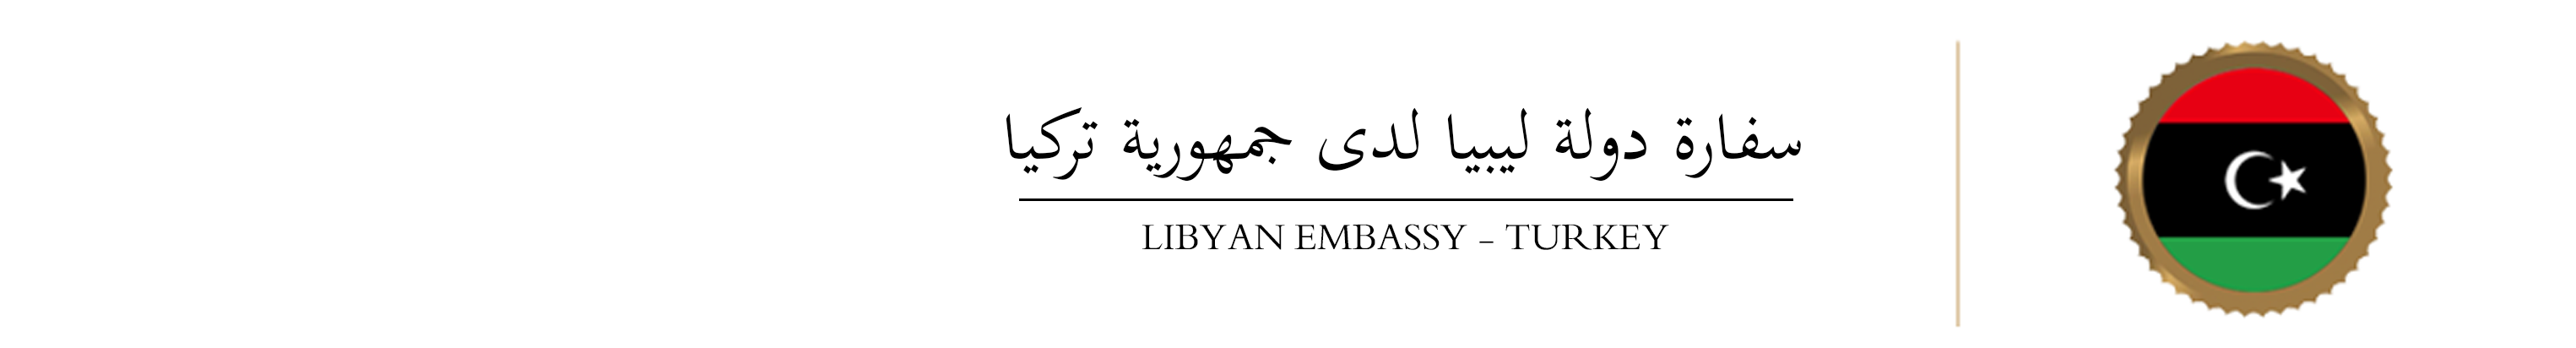 السفارة الليبية لدى جمهرية تركيا